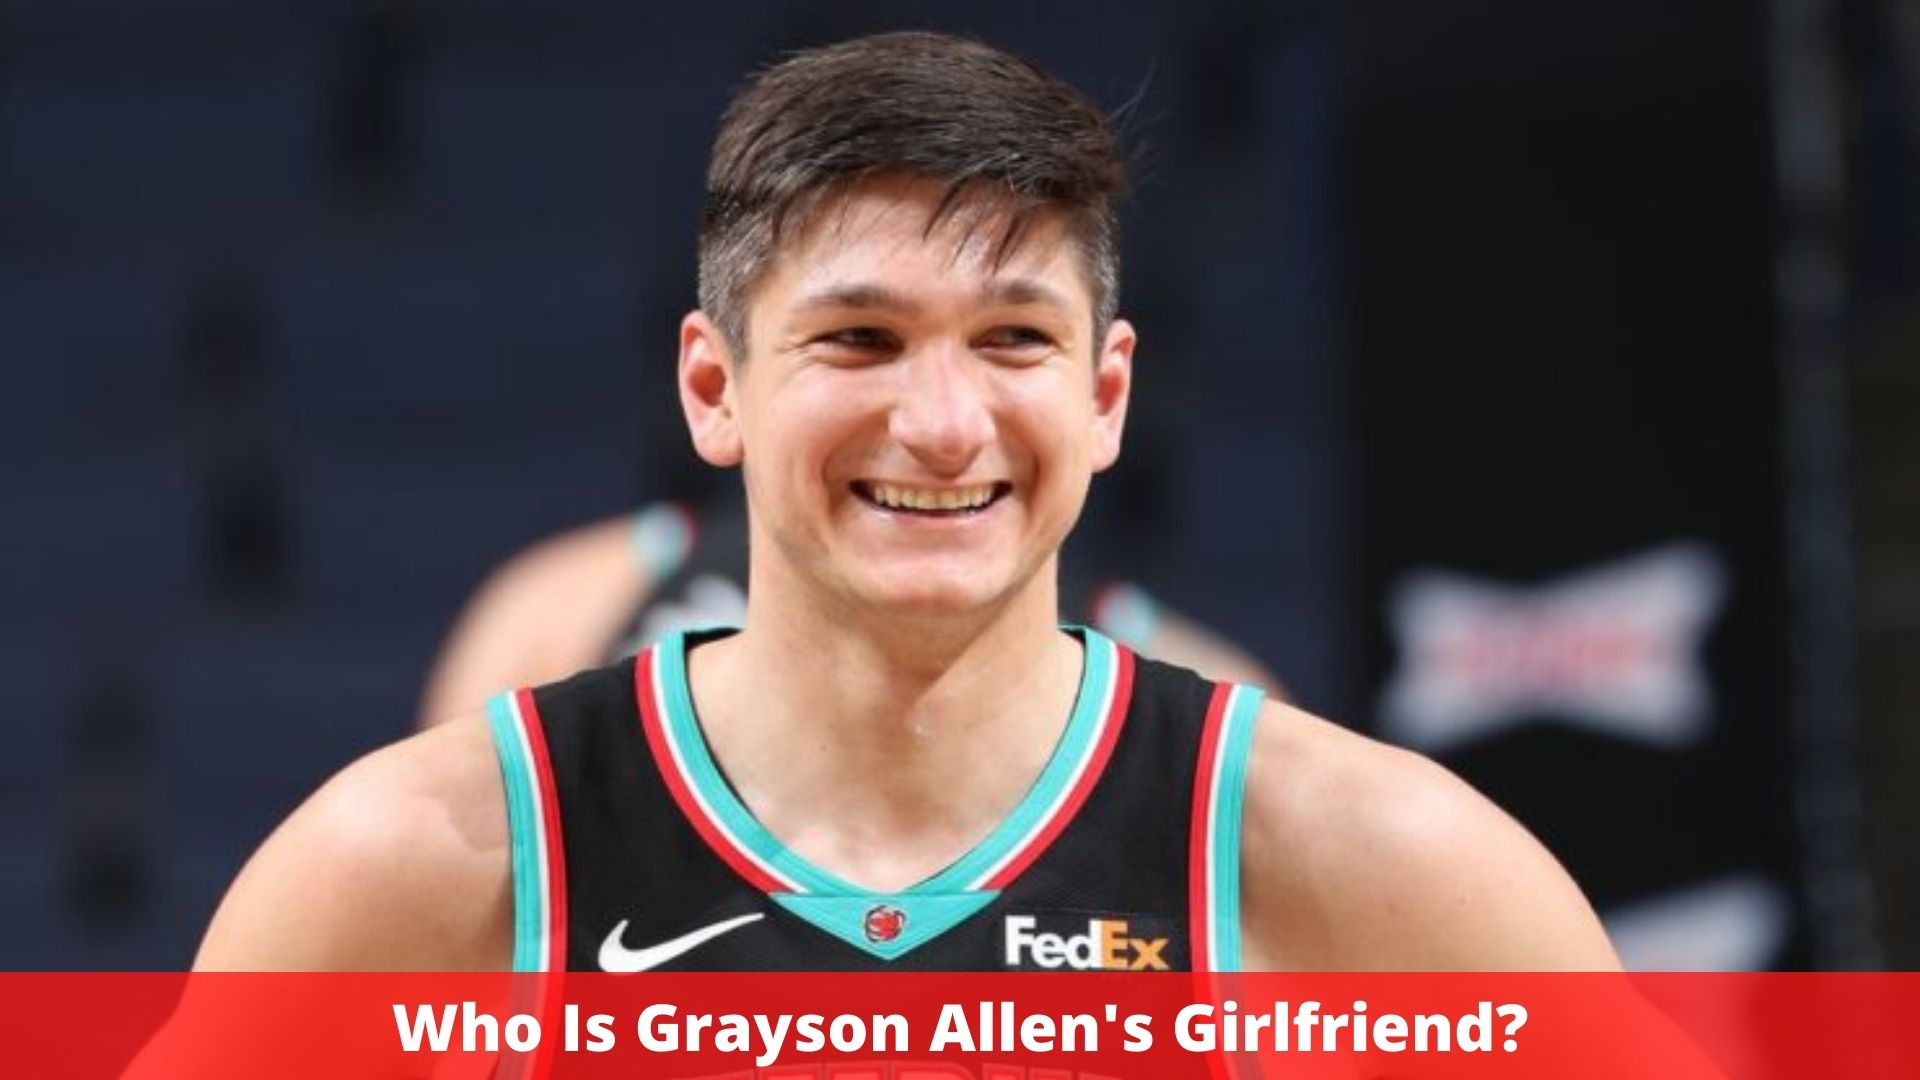 Who Is Grayson Allen's Girlfriend?